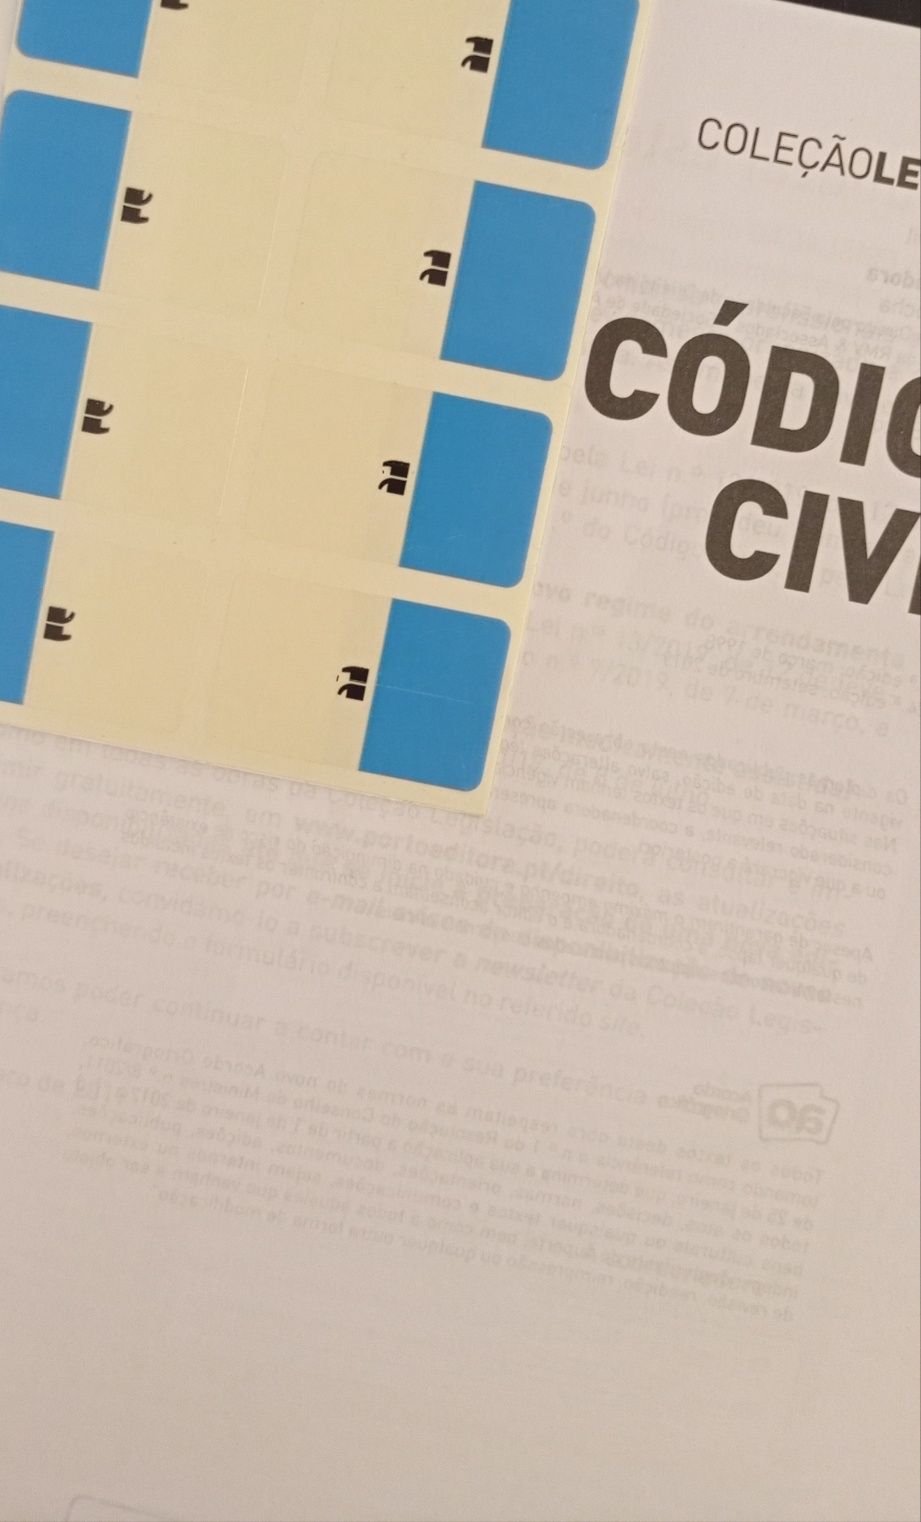 Código civil - Coleção Legislação (edição profissional)